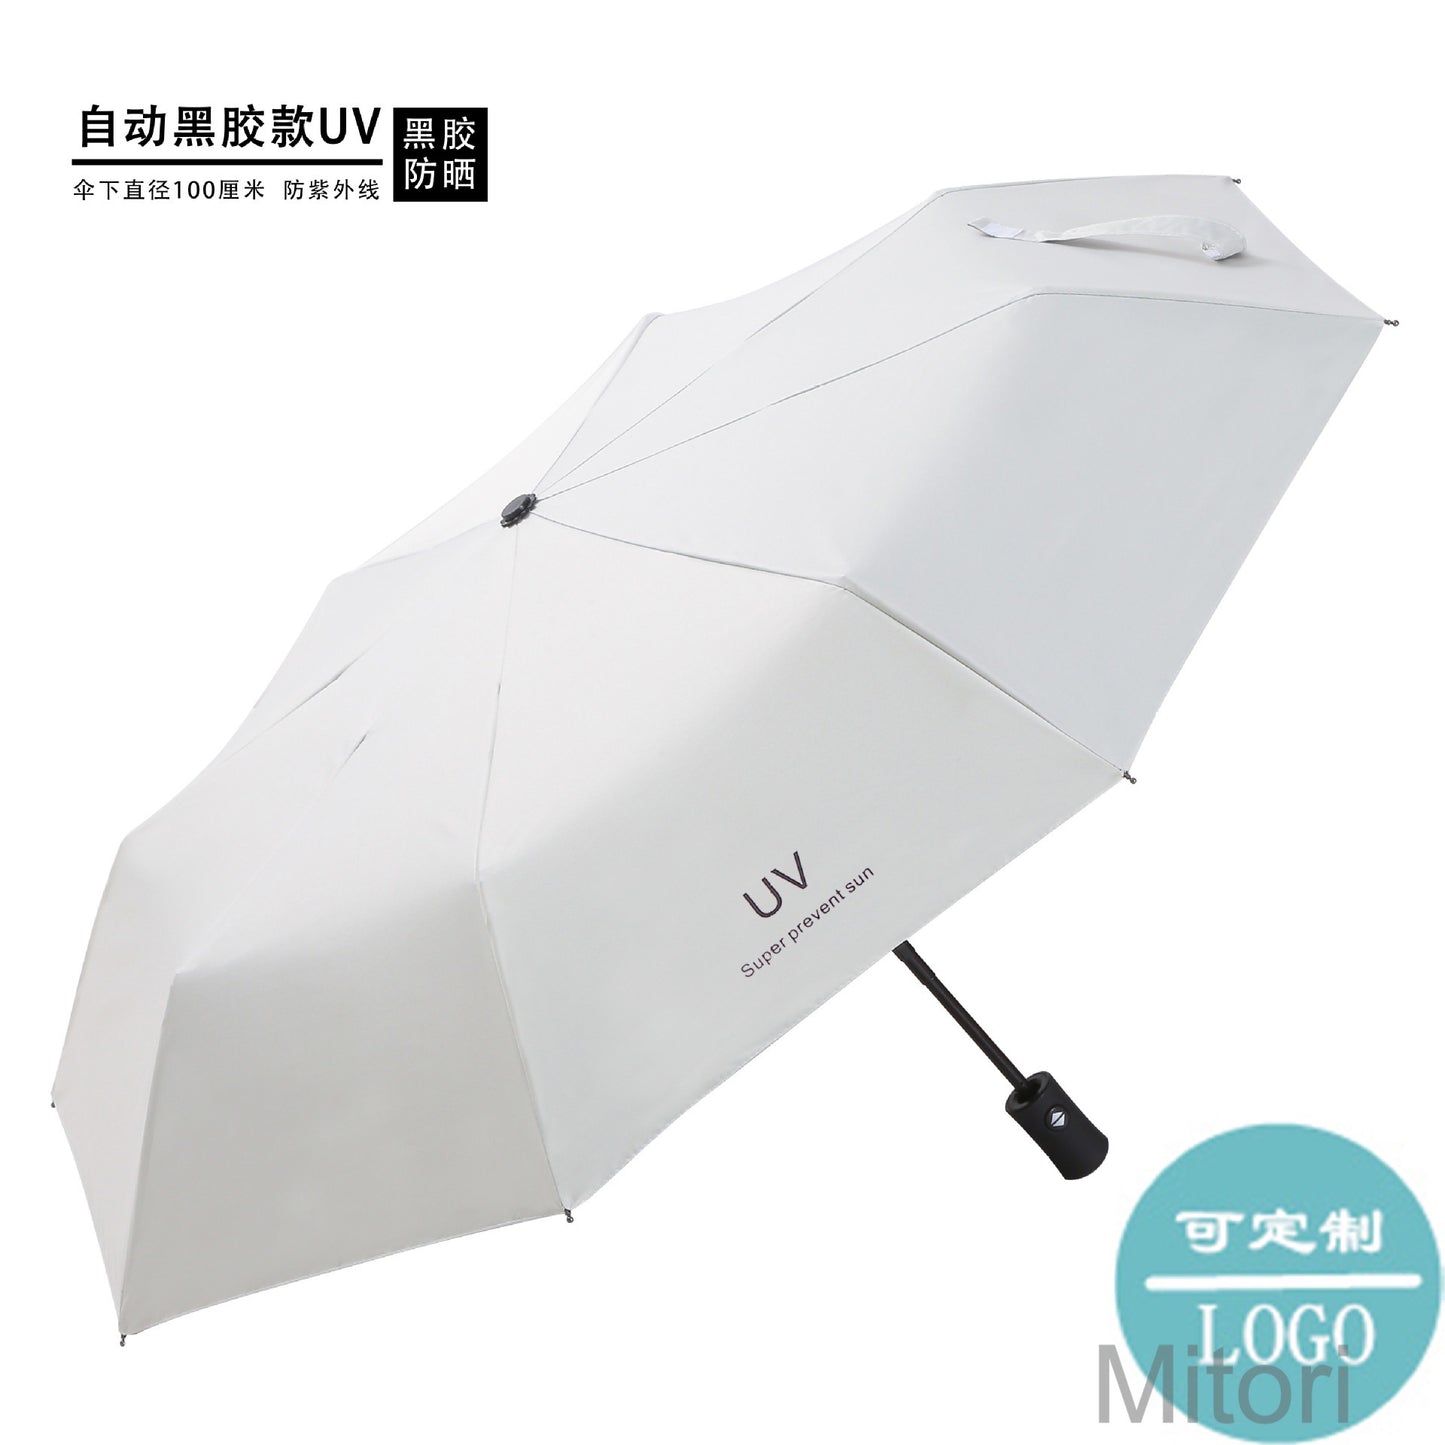 防UV黑膠全自動太陽傘